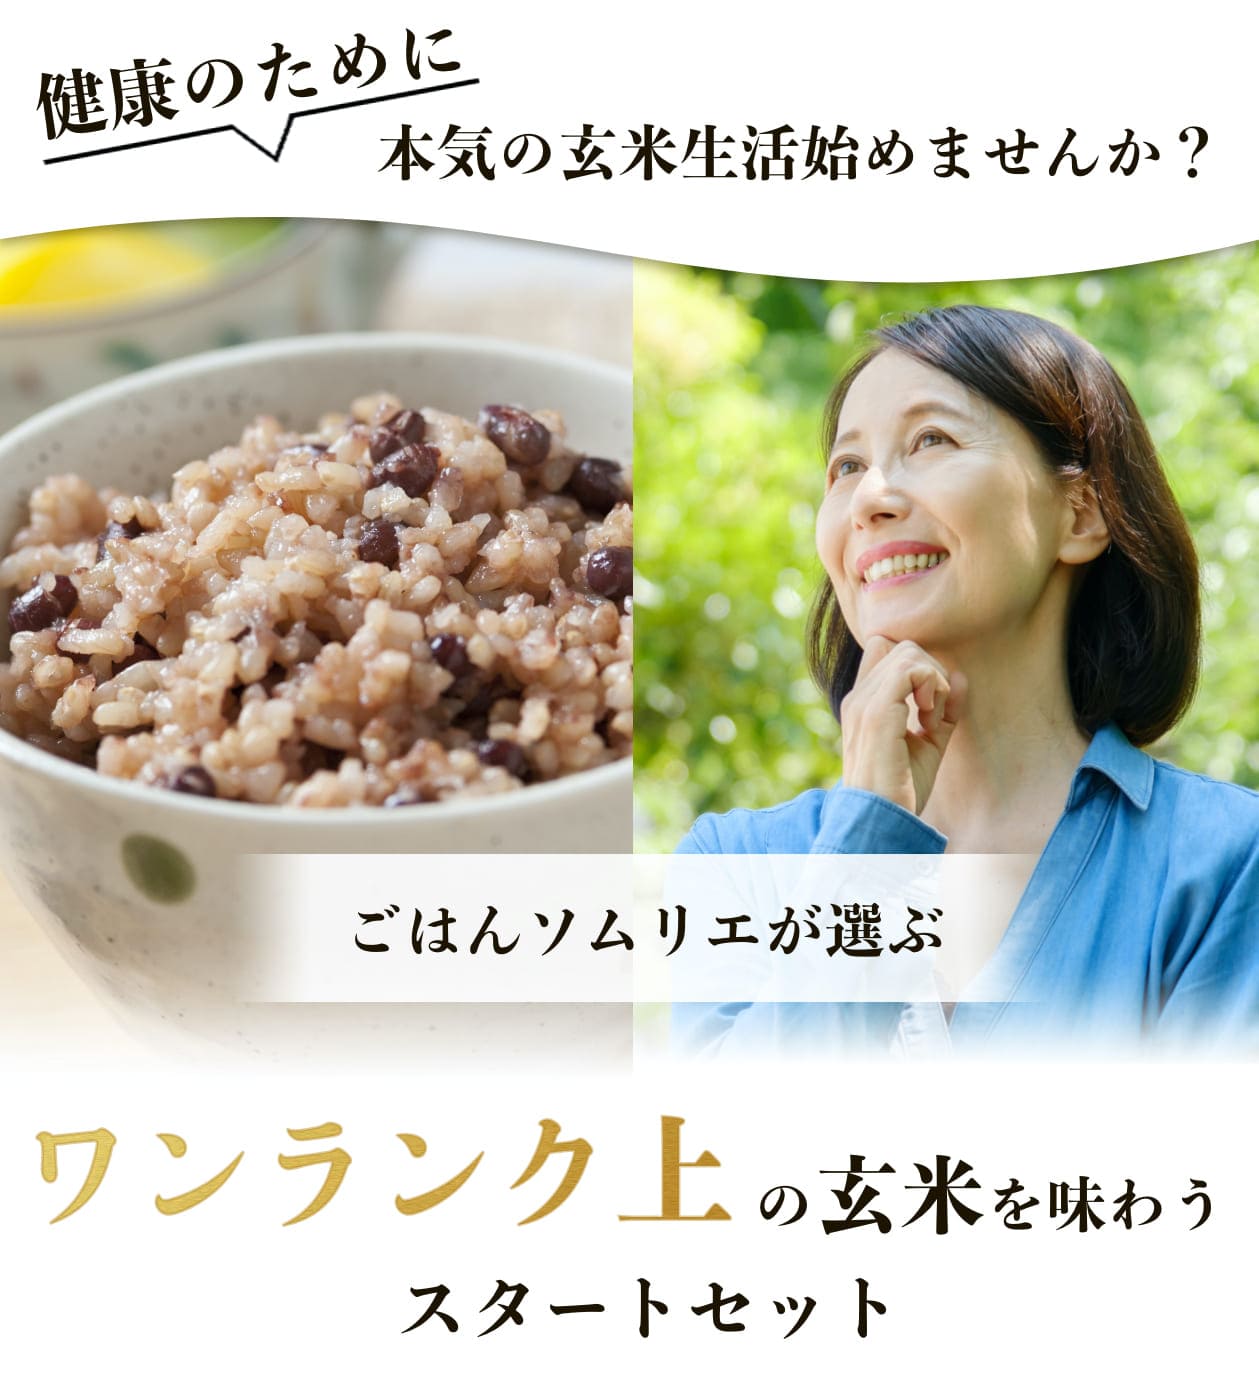 健康のために本気の玄米生活をはじめませんか？ご飯ソムリエが選ぶワンランク上の玄米を味わうスタートセット